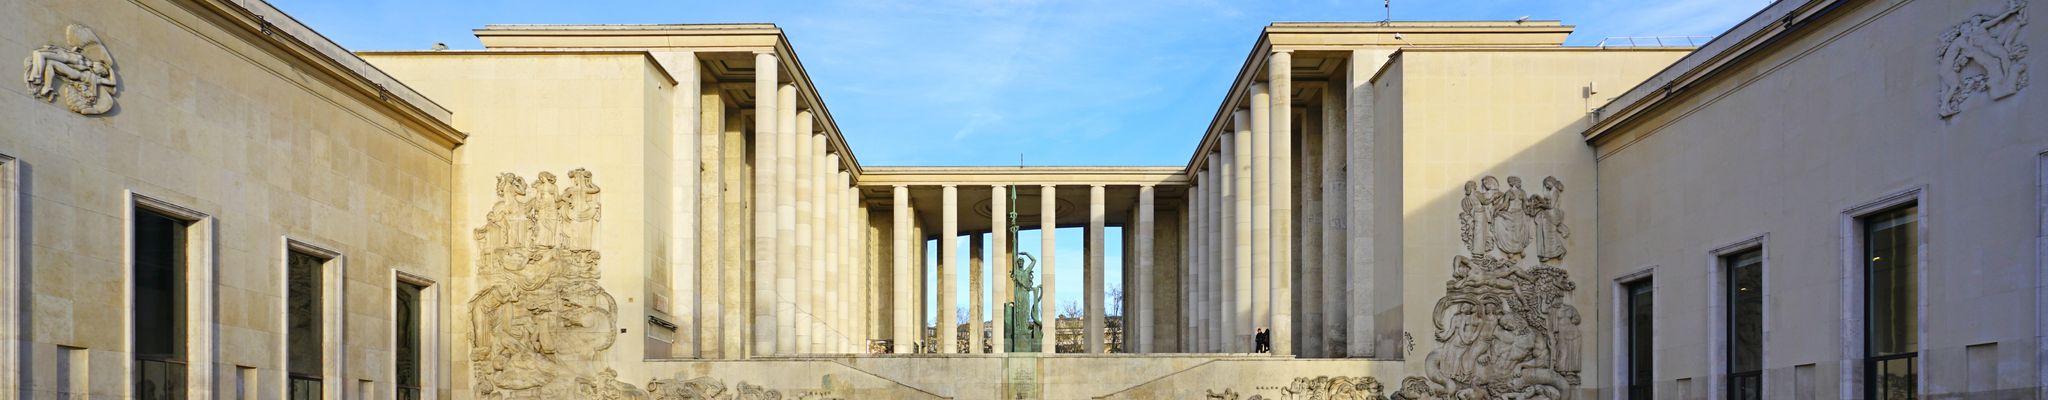 Музей современного искусства Парижа